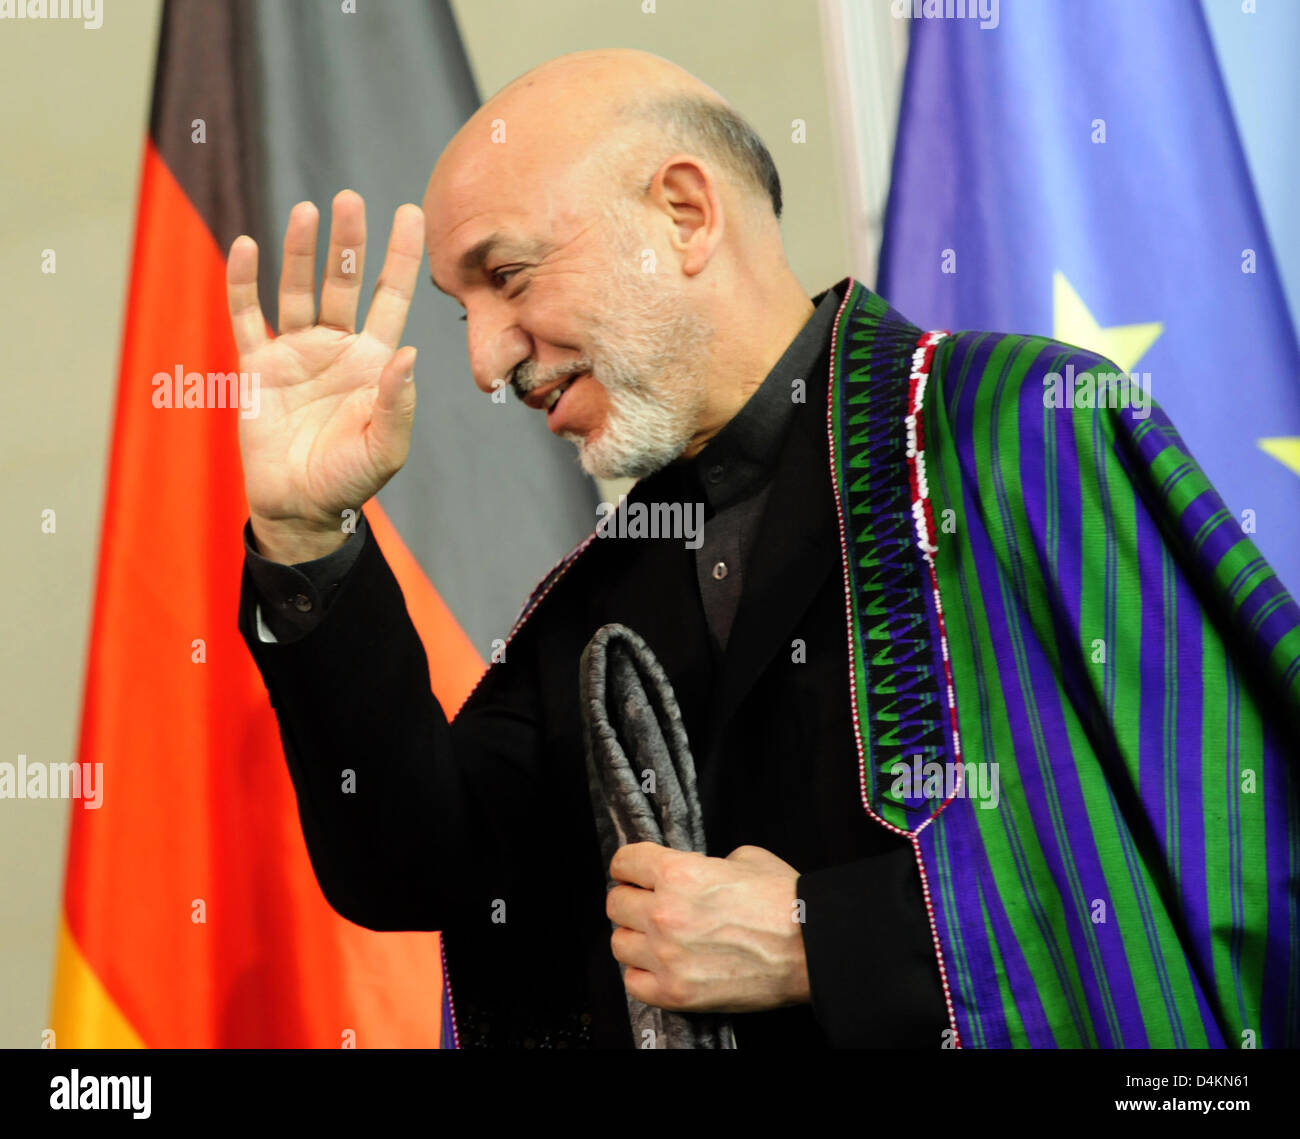 L'Afghanistan ?s le président Hamid Karzai est photographié après une conférence de presse conjointe avec la Chancelière allemande Angela Merkel à la Chancellerie fédérale à Berlin, Allemagne, 10 mai 2009. Merkel et Karzaï se sont réunis à Berlin pour des entretiens bilatéraux. Photo : KLAUS-DIETMAR GABBERT Banque D'Images